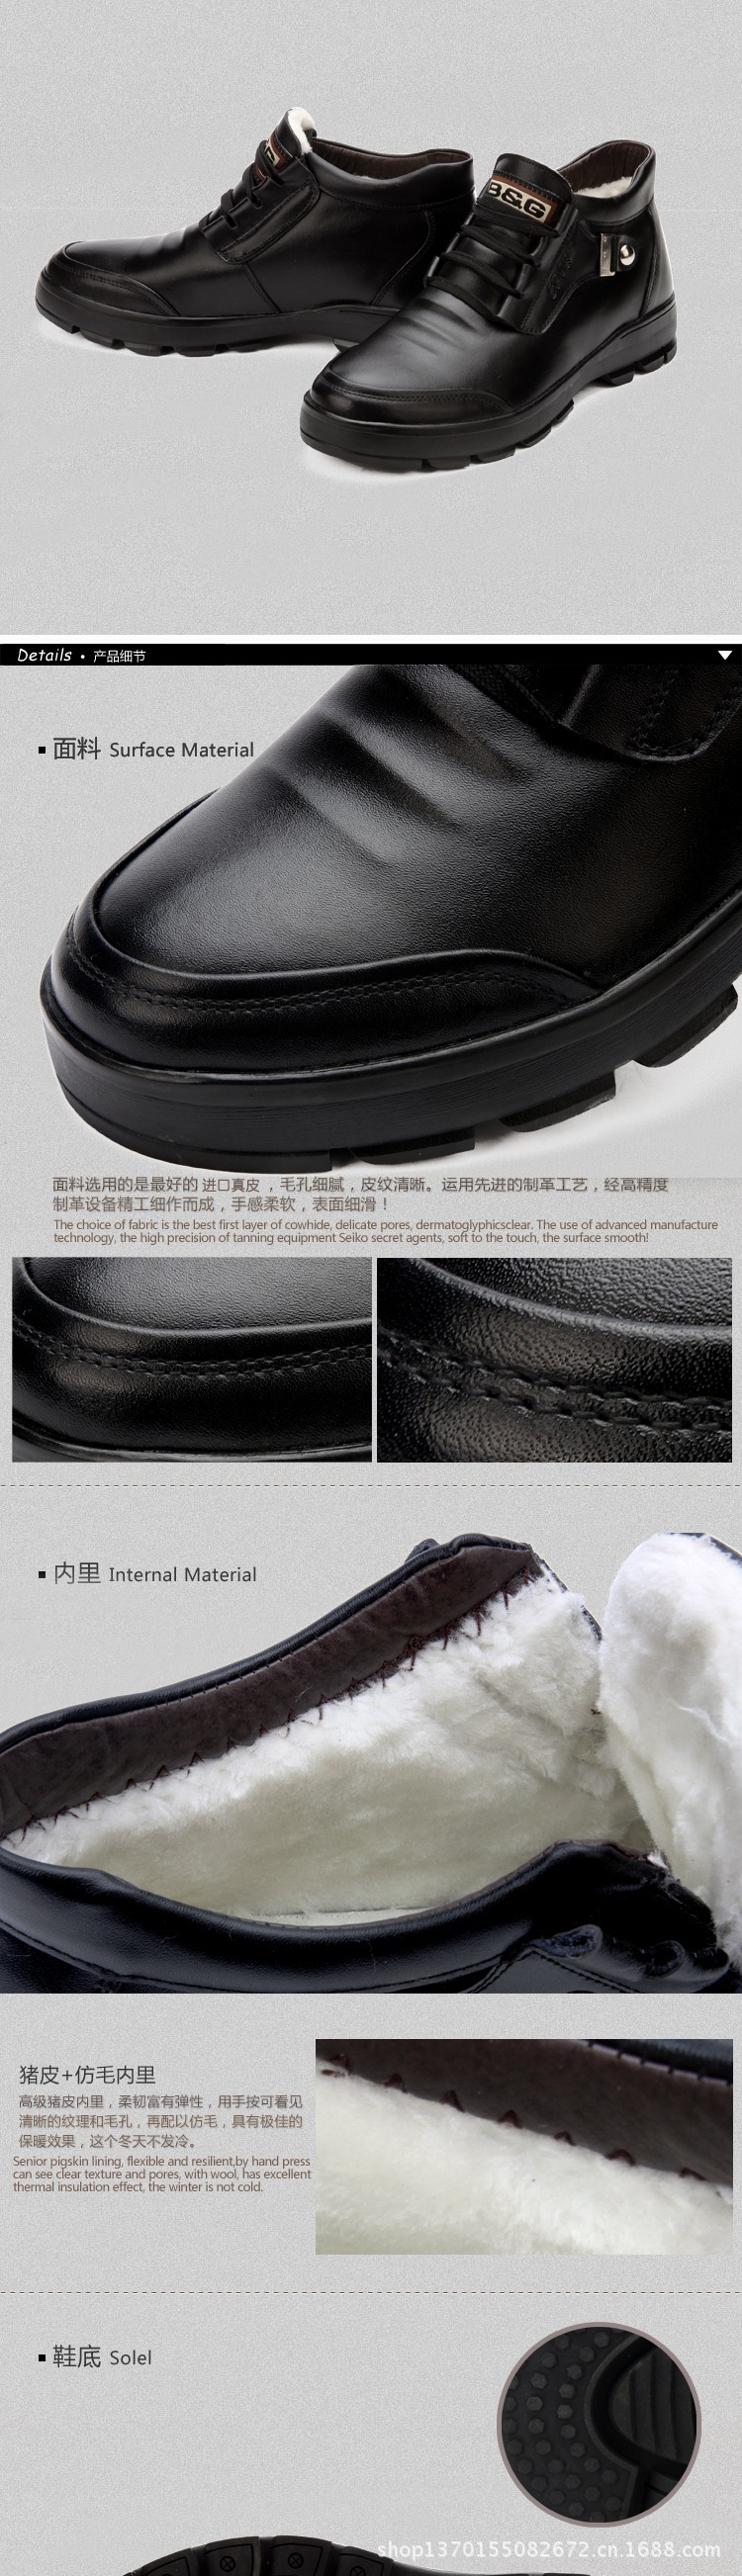 棉鞋2_02